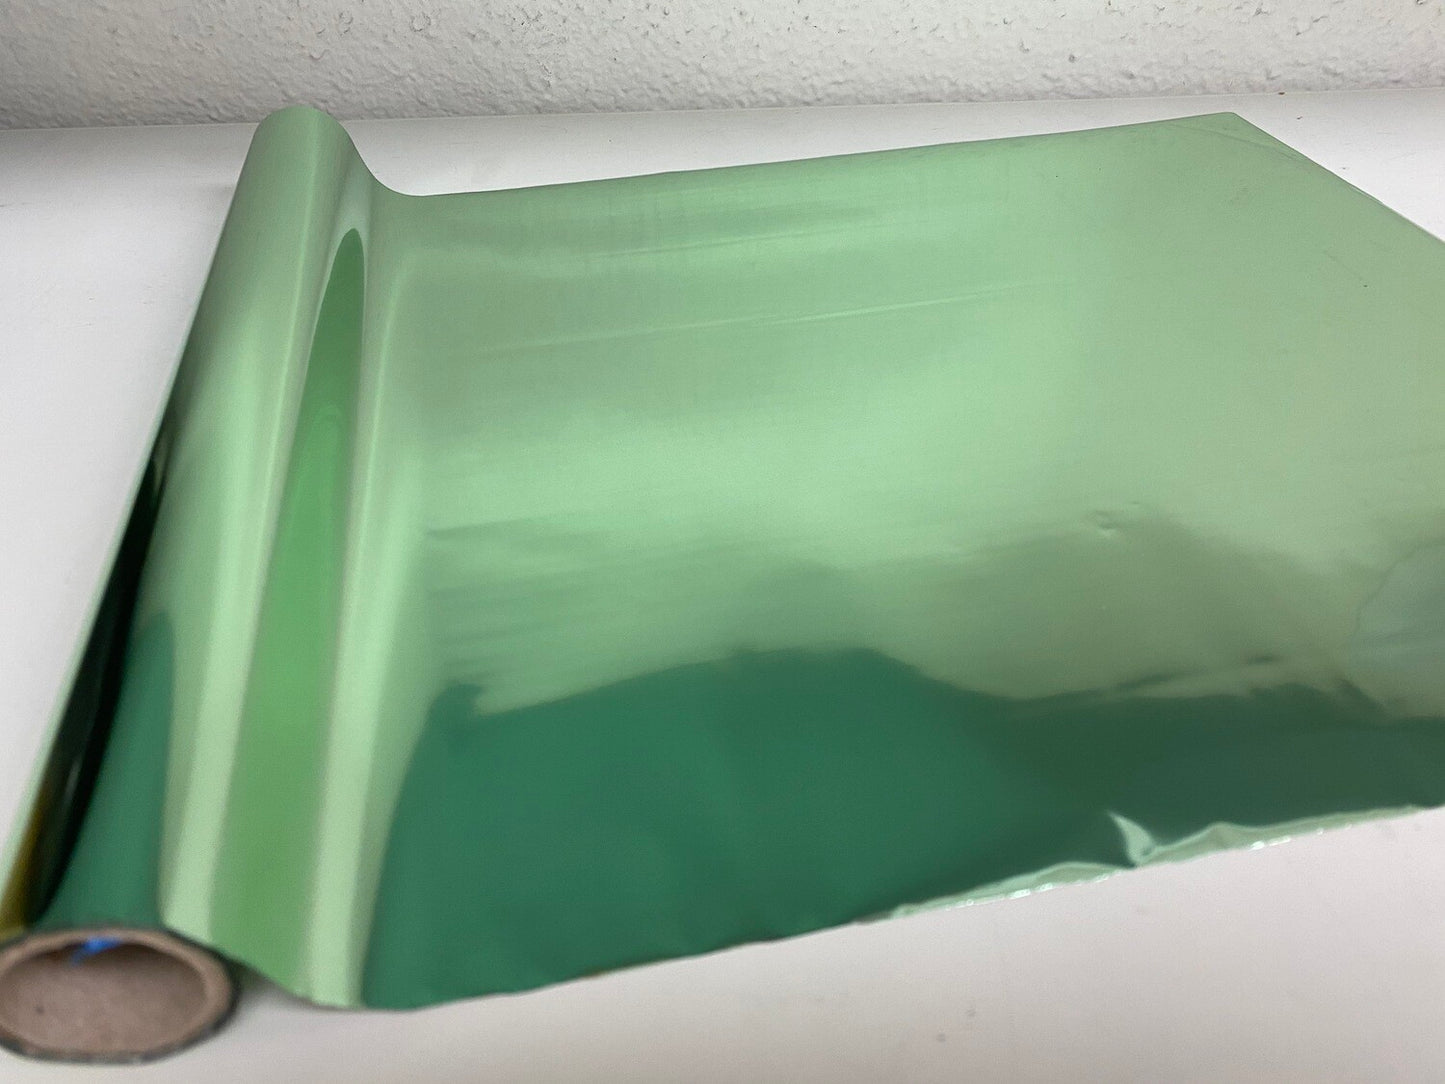 Celadon Green foil